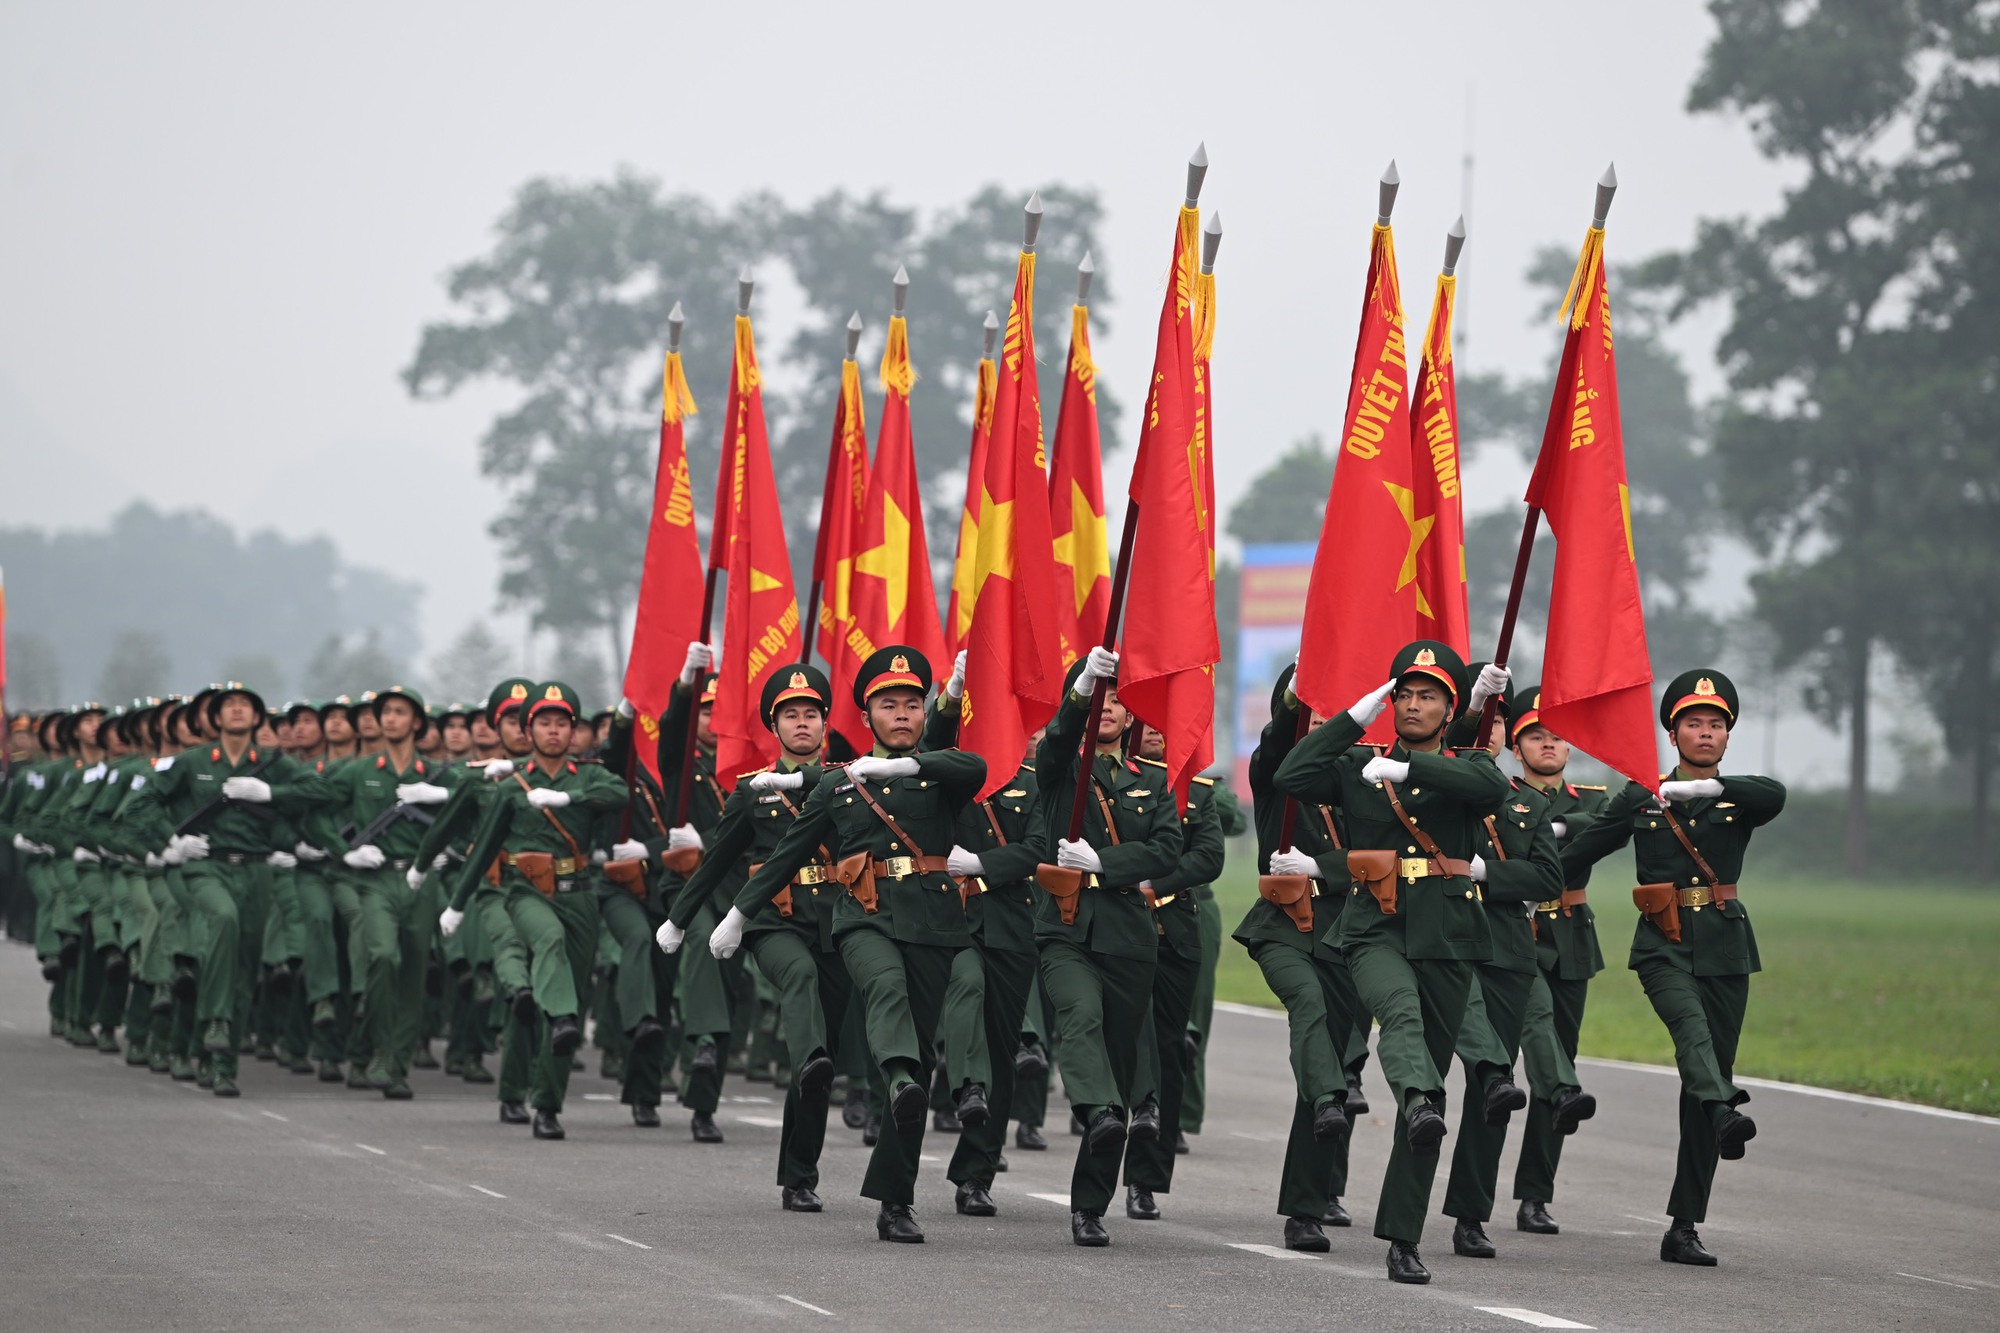 Diễu binh, diễu hành biểu dương lực lượng, khẳng định tầm vóc, giá trị lịch sử vĩ đại của Chiến thắng Điện Biên Phủ- Ảnh 11.